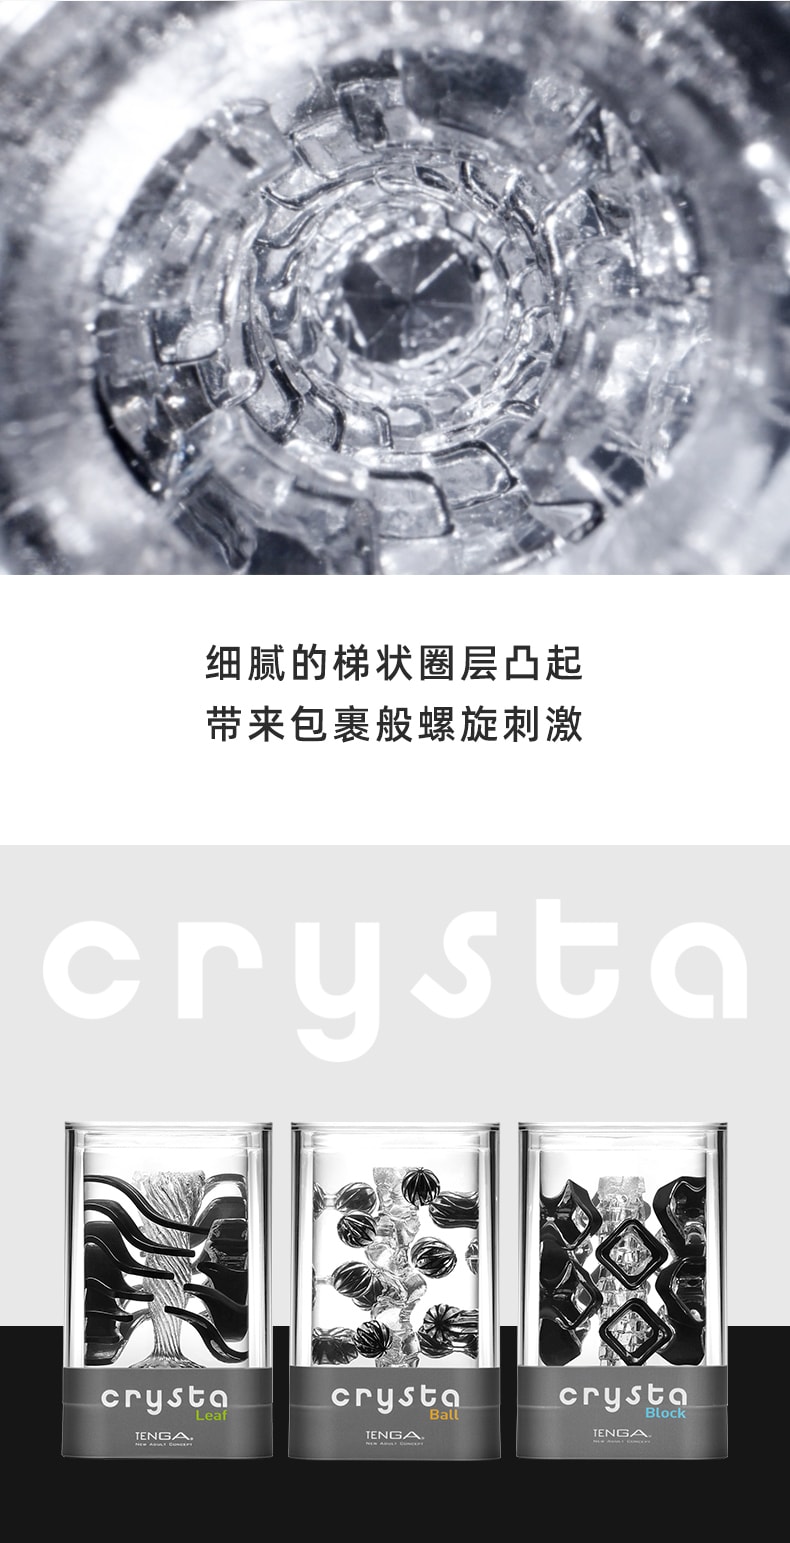 日本 TENGA 进口飞机杯新品CRYSTA内雕颗粒 #方块